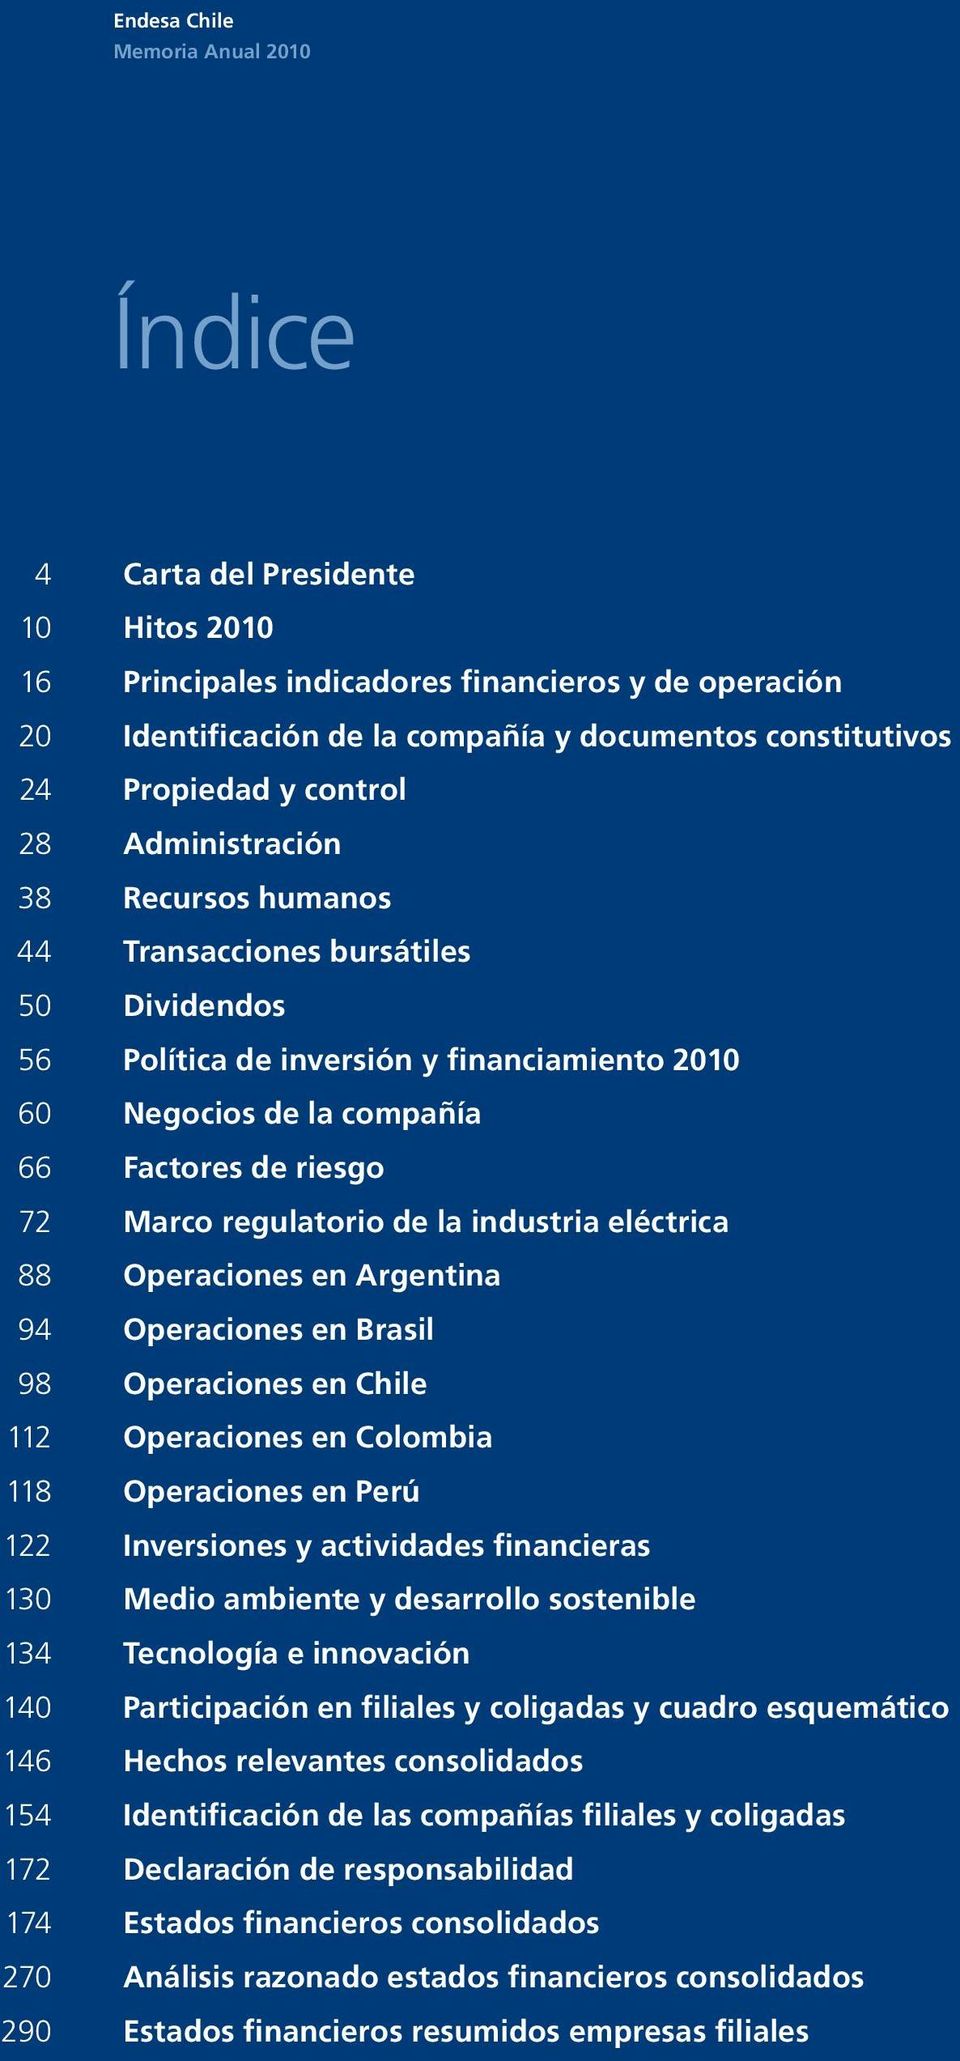 Marco regulatorio de la industria eléctrica 88 Operaciones en Argentina 94 Operaciones en Brasil 98 Operaciones en Chile 112 Operaciones en Colombia 118 Operaciones en Perú 122 Inversiones y